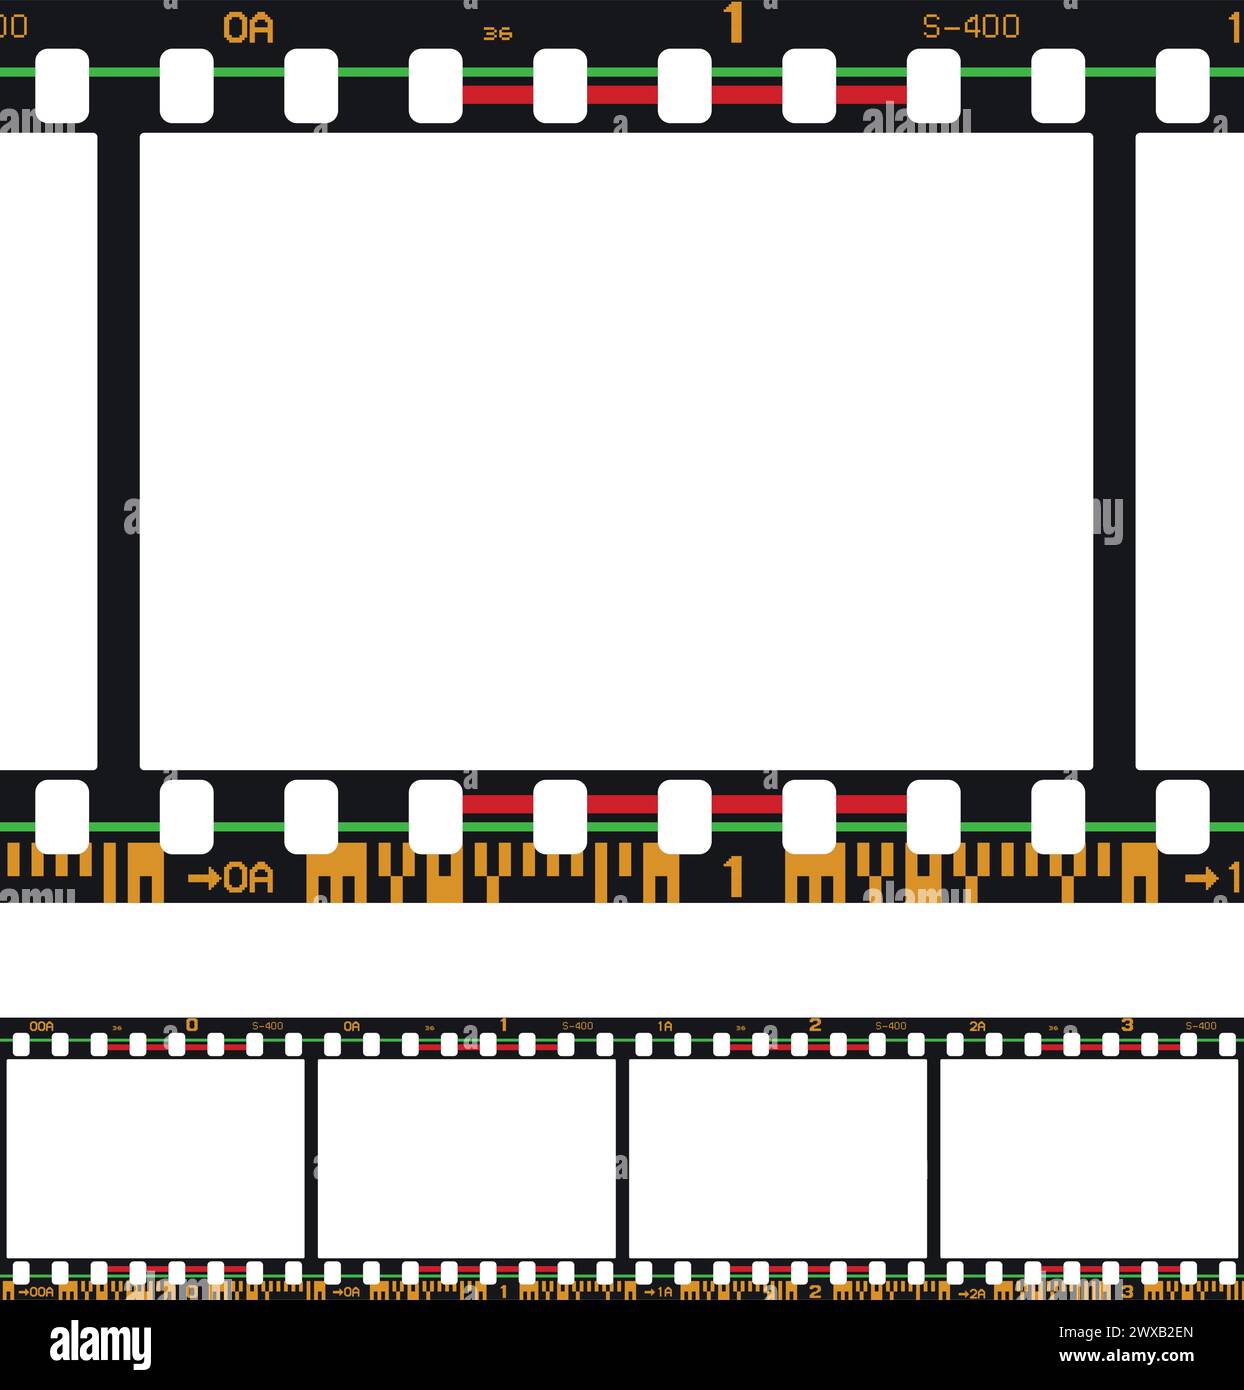 Vektorabbildung eines analogen fotografischen Filmrahmens mit Barcodes Stock Vektor